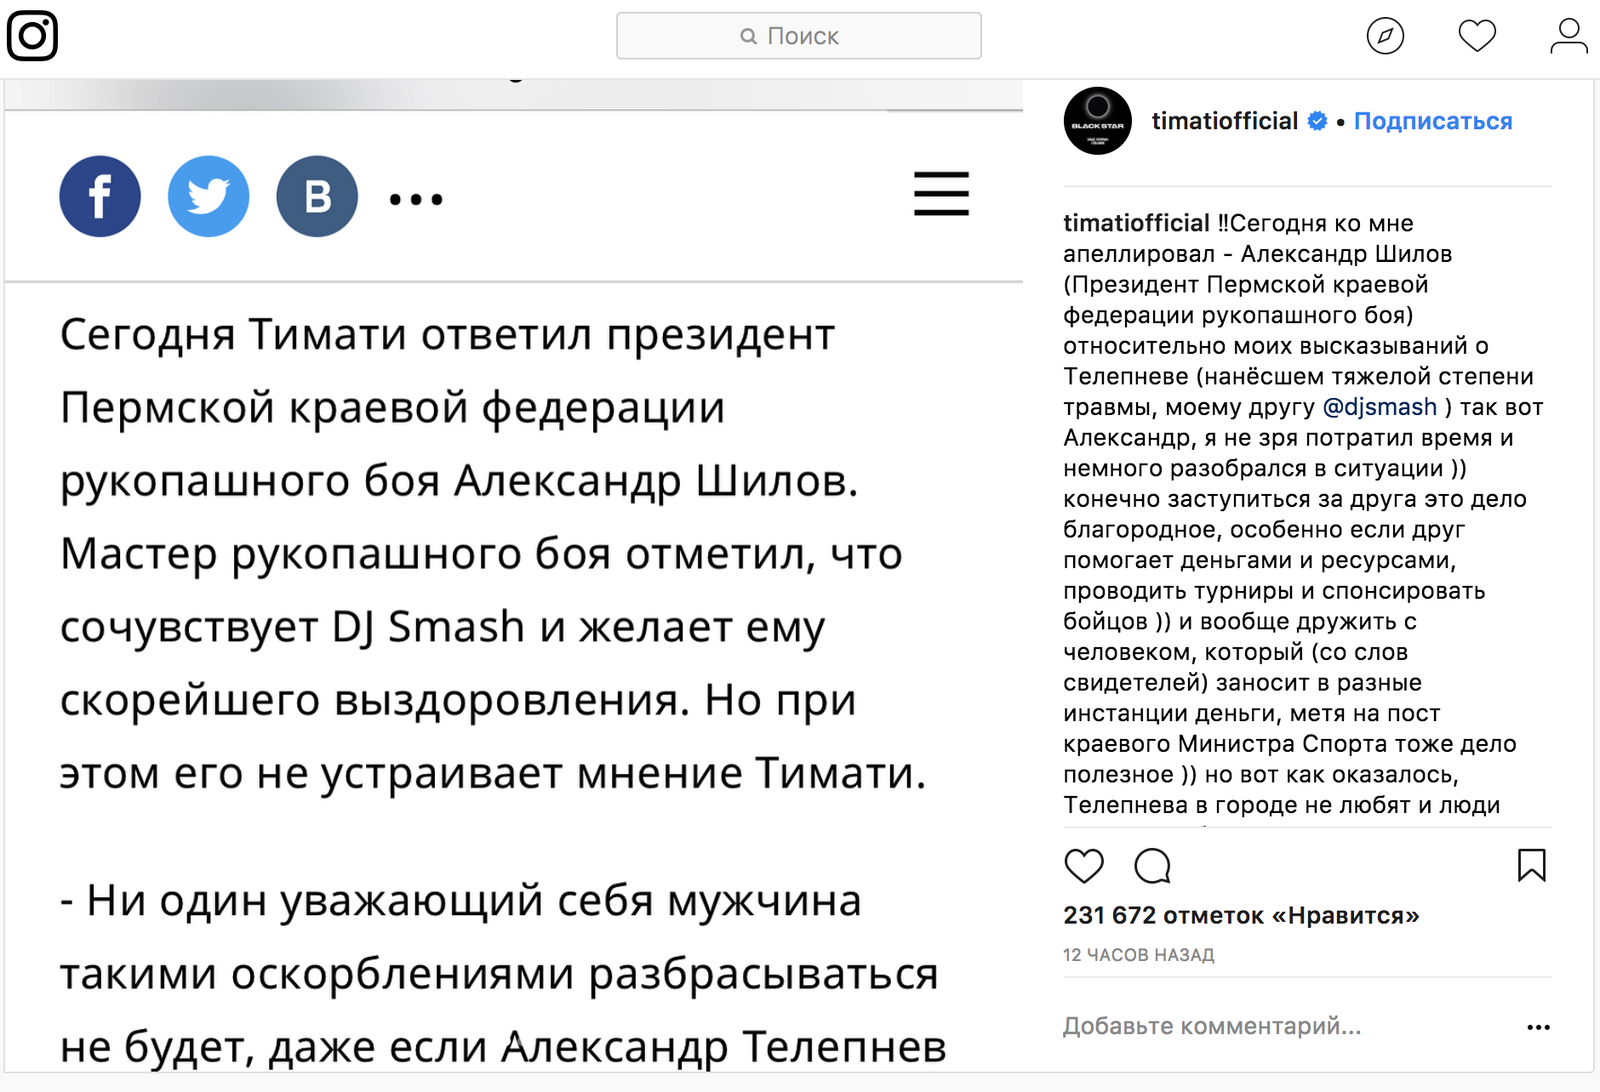 Тимати пообещал обнародовать гей-видео бывшего депутата-единоросса  Александра Телепнева и Сергеея Ванкевича | Пикабу